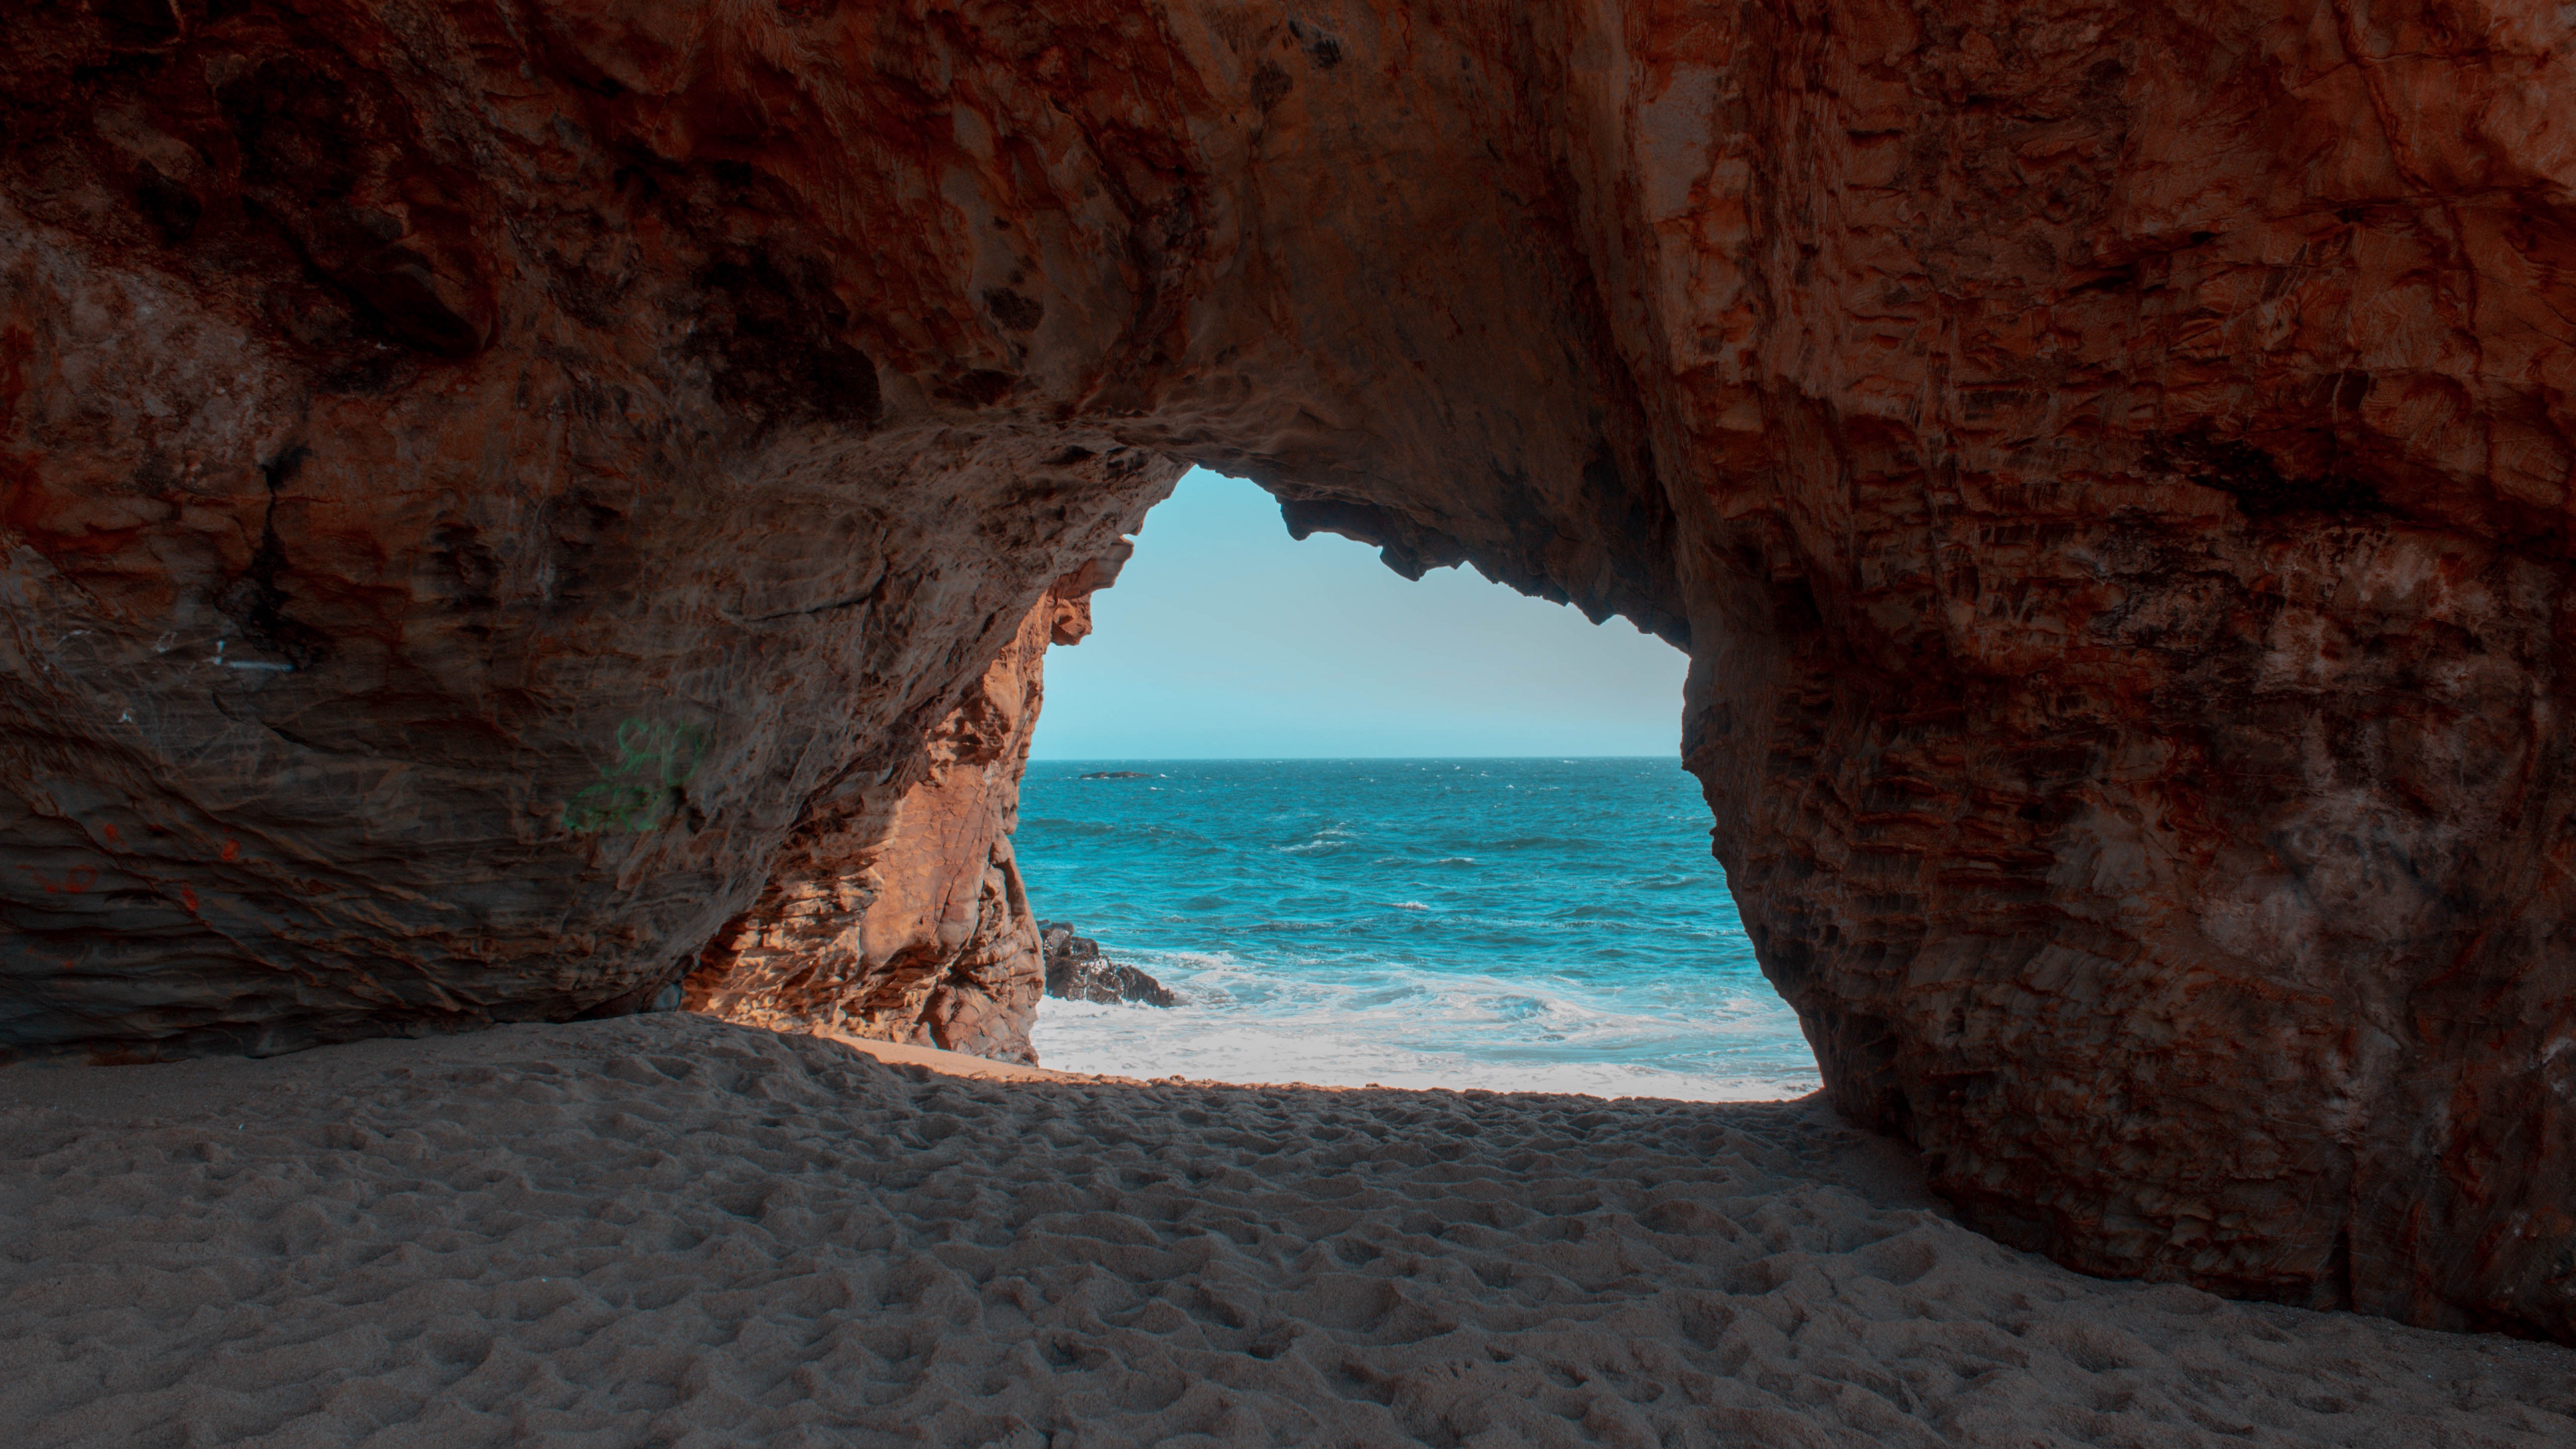 دانلود تصویر زمینه جذاب با طراوت از درون غاری در ساحل